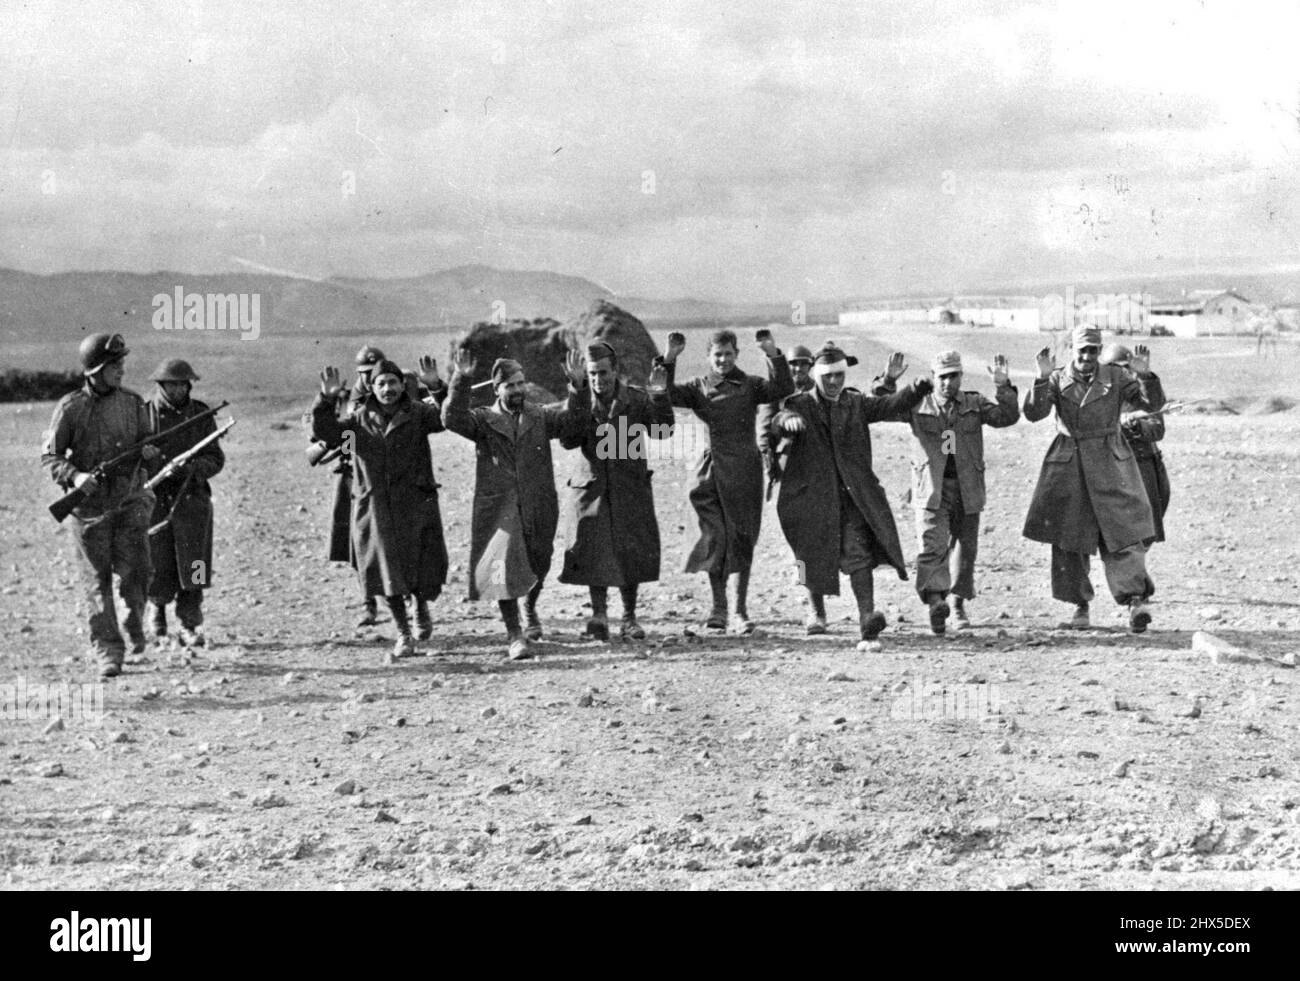 Prisonniers d'axe capturés en Tunisie ces prisonniers allemands et italiens ont été capturés lors de la contre-attaque américaine réussie au col de Kasserine, en Tunisie. Ils sont en train d'être marchés à l'arrière par des soldats alliés. 1 janvier 1943. (Photo de l'Office of War information Picture des États-Unis). Banque D'Images